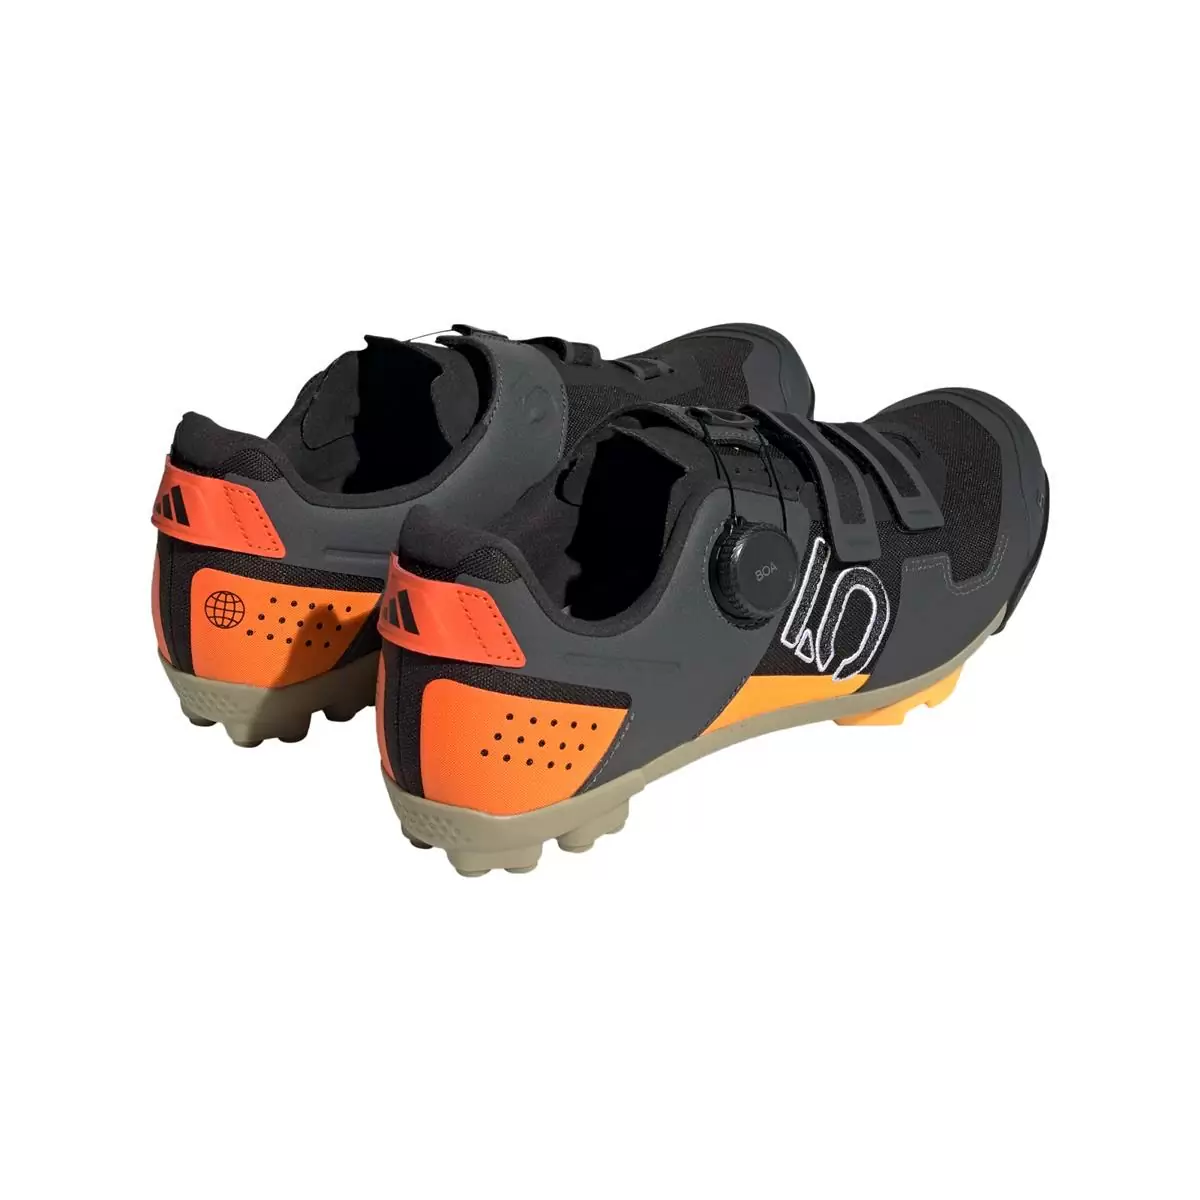 Clip 5.10 Kestrel Boa MTB Shoes Black/Orange Size 43 #4